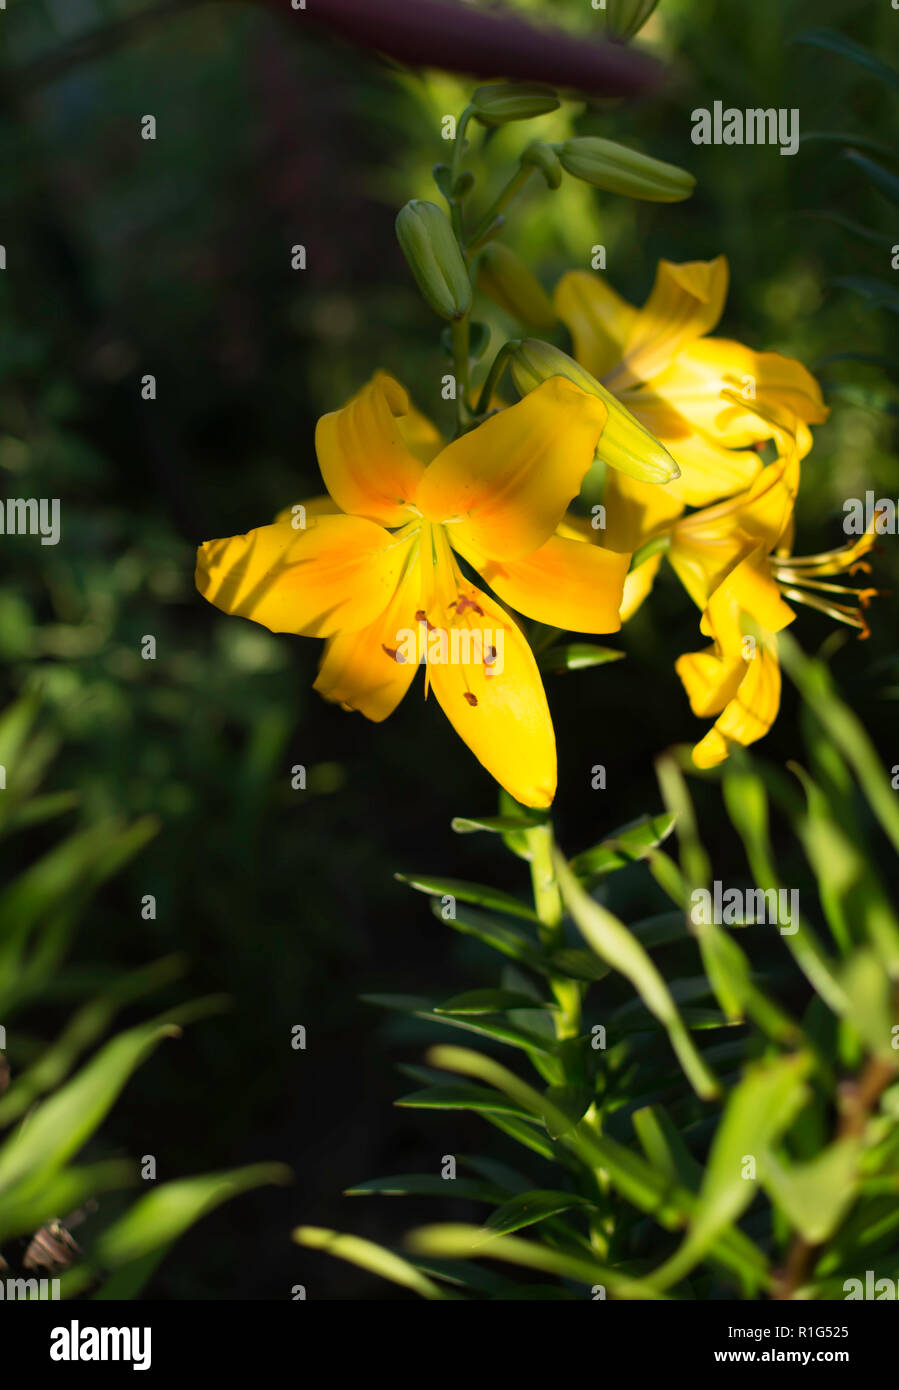 Helle gelbe Lilie (Lilium) Blüte beschattet, aber mit dem Strahl des Sonnenlichts auf seine Blütenblätter. Lilie Blume symbolisiert Reinheit und raffinierte Schönheit. Stockfoto